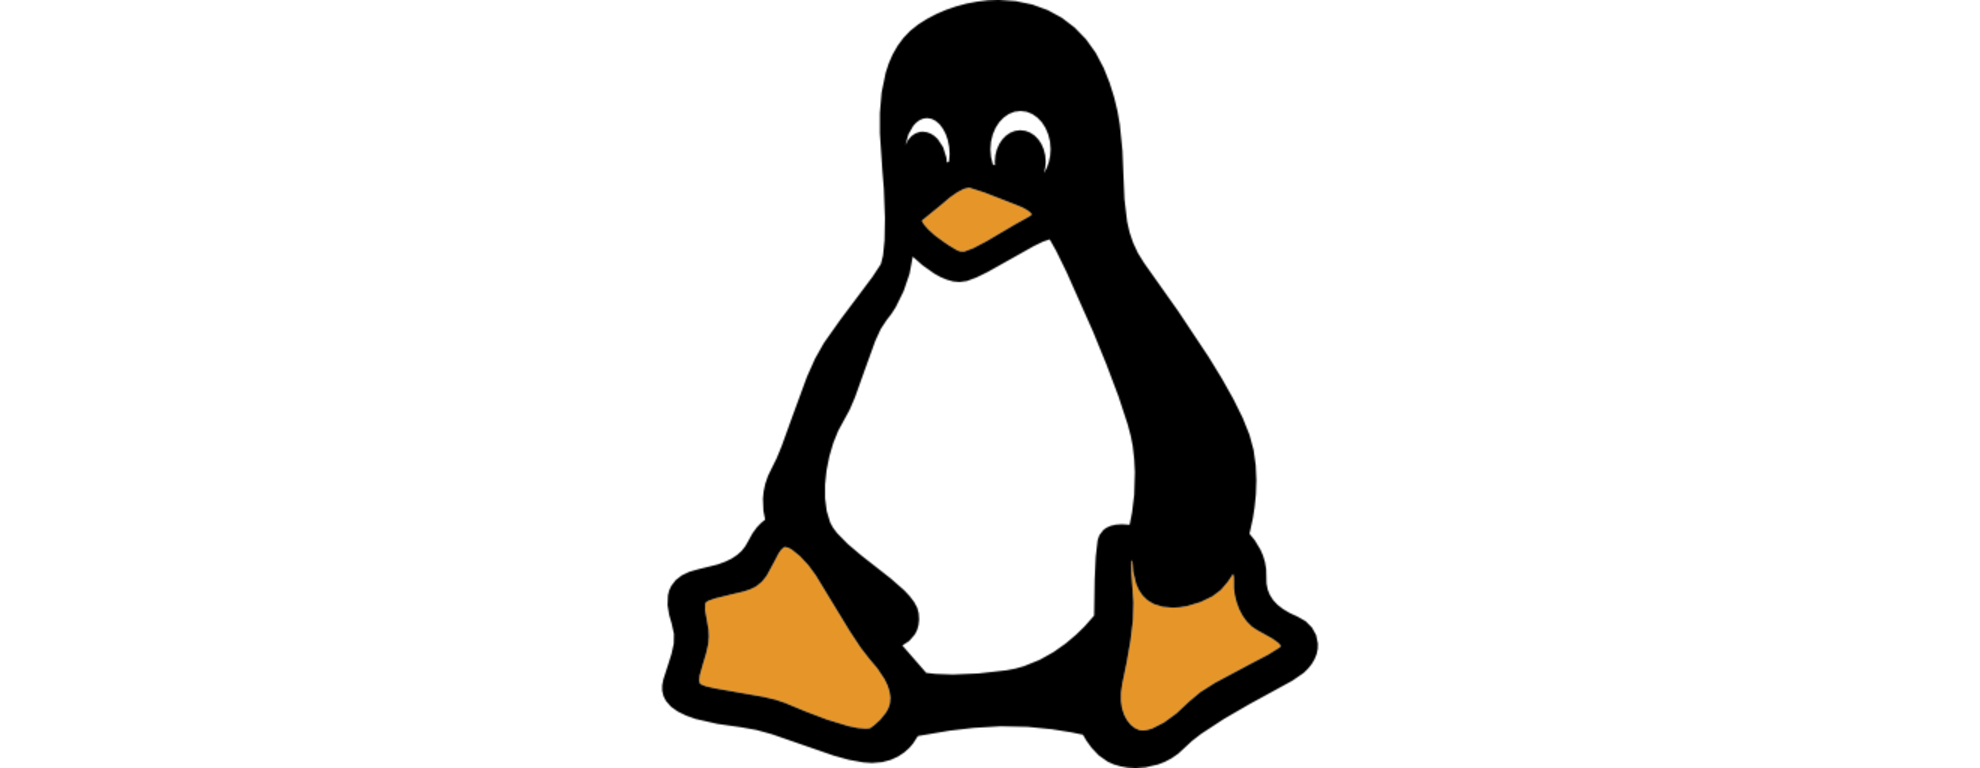 리눅스 파일 정보 확인하기